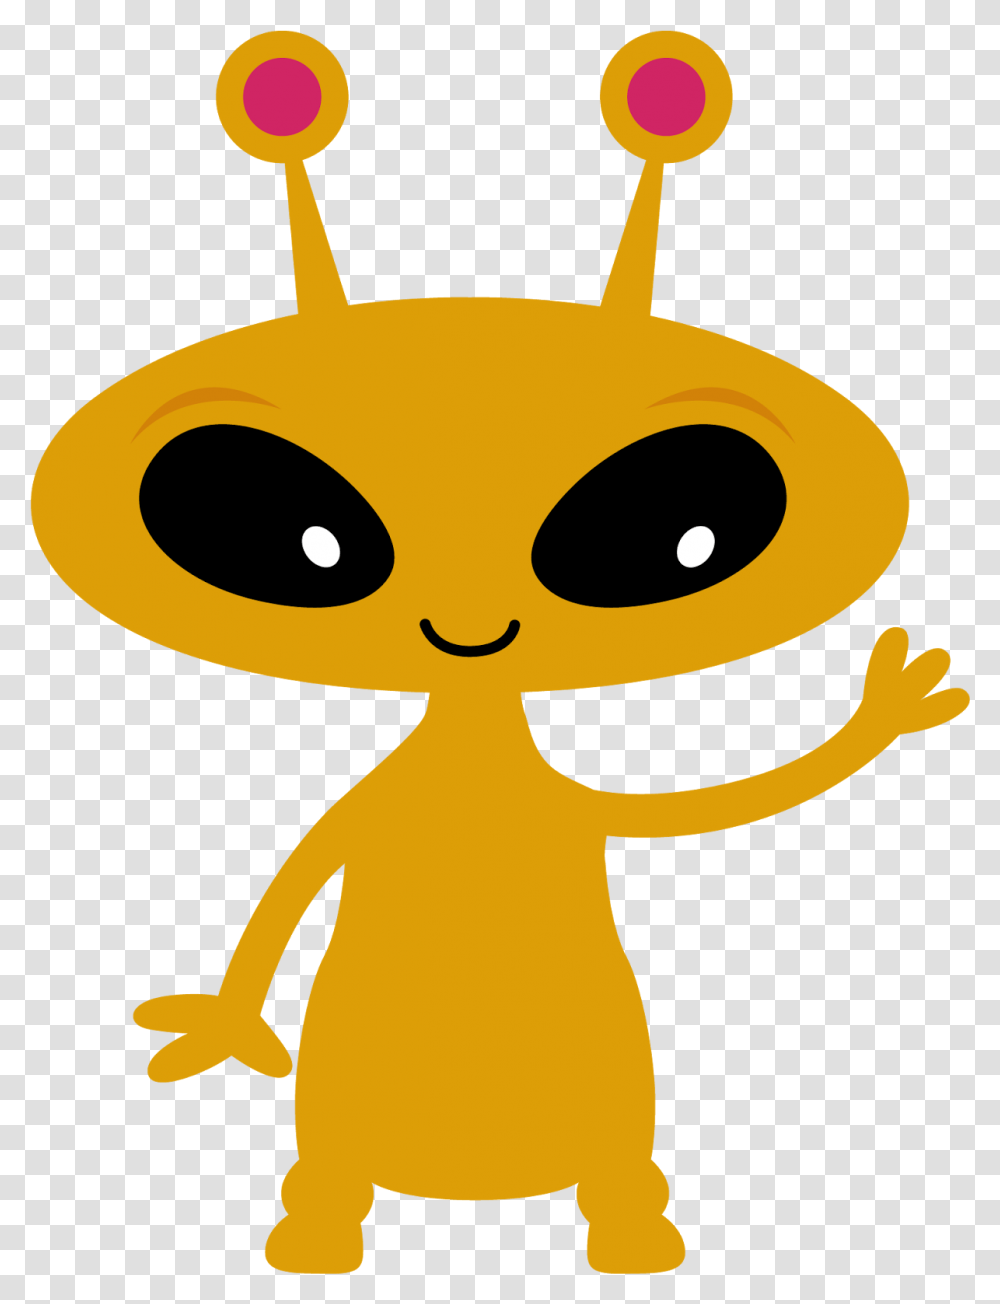 Spaceship Clipart Aliens Love Underpants Alien Clip Art, Silhouette, Mascot Transparent Png